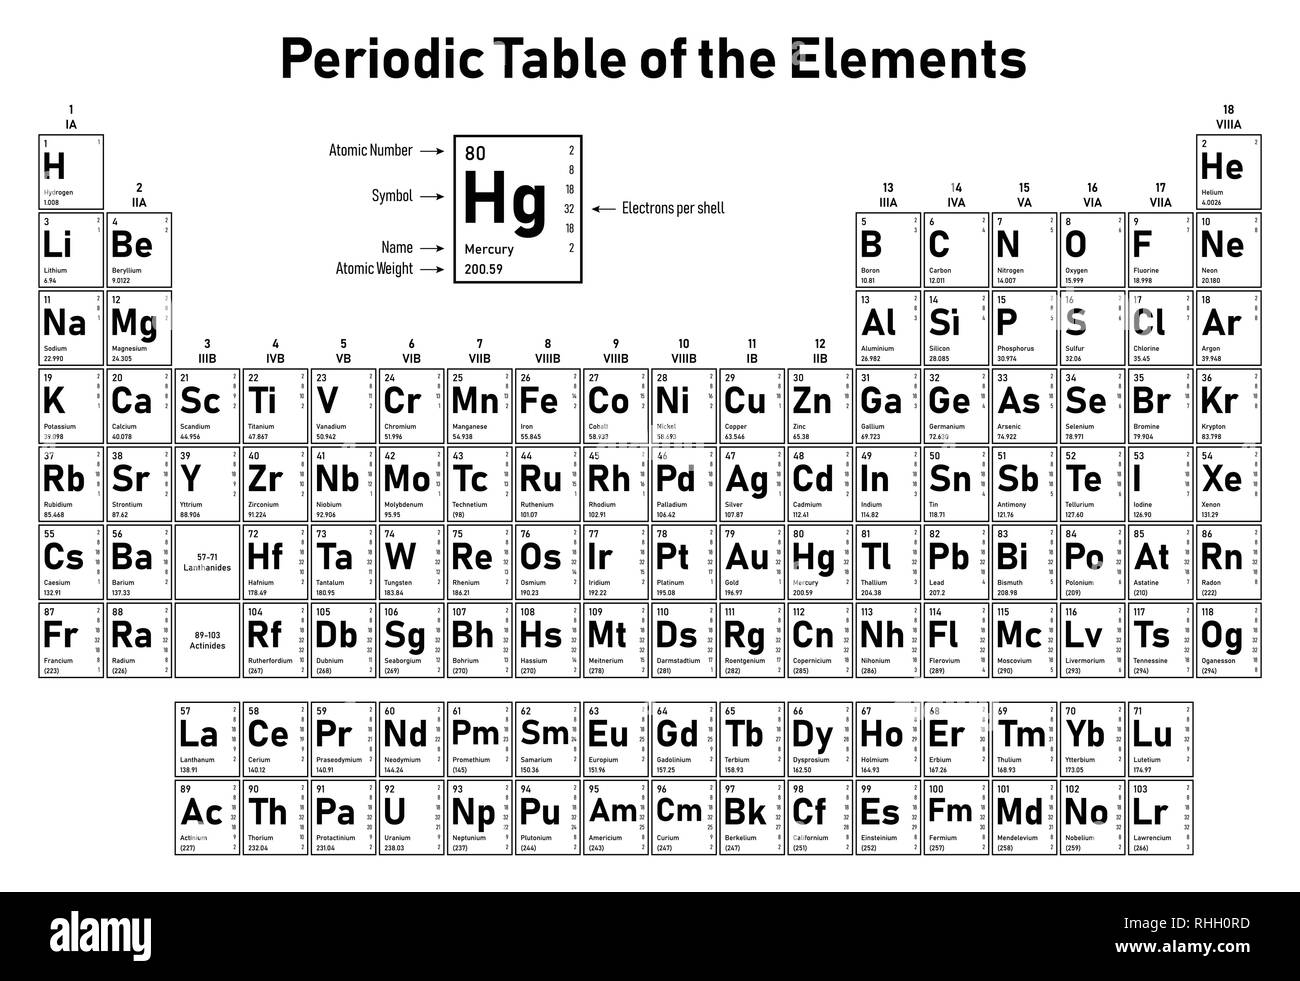 Tavola periodica degli elementi - Mostra numero atomico, simbolo, il nome, peso atomico, elettroni per shell, stato della materia e la categoria dell'elemento Illustrazione Vettoriale